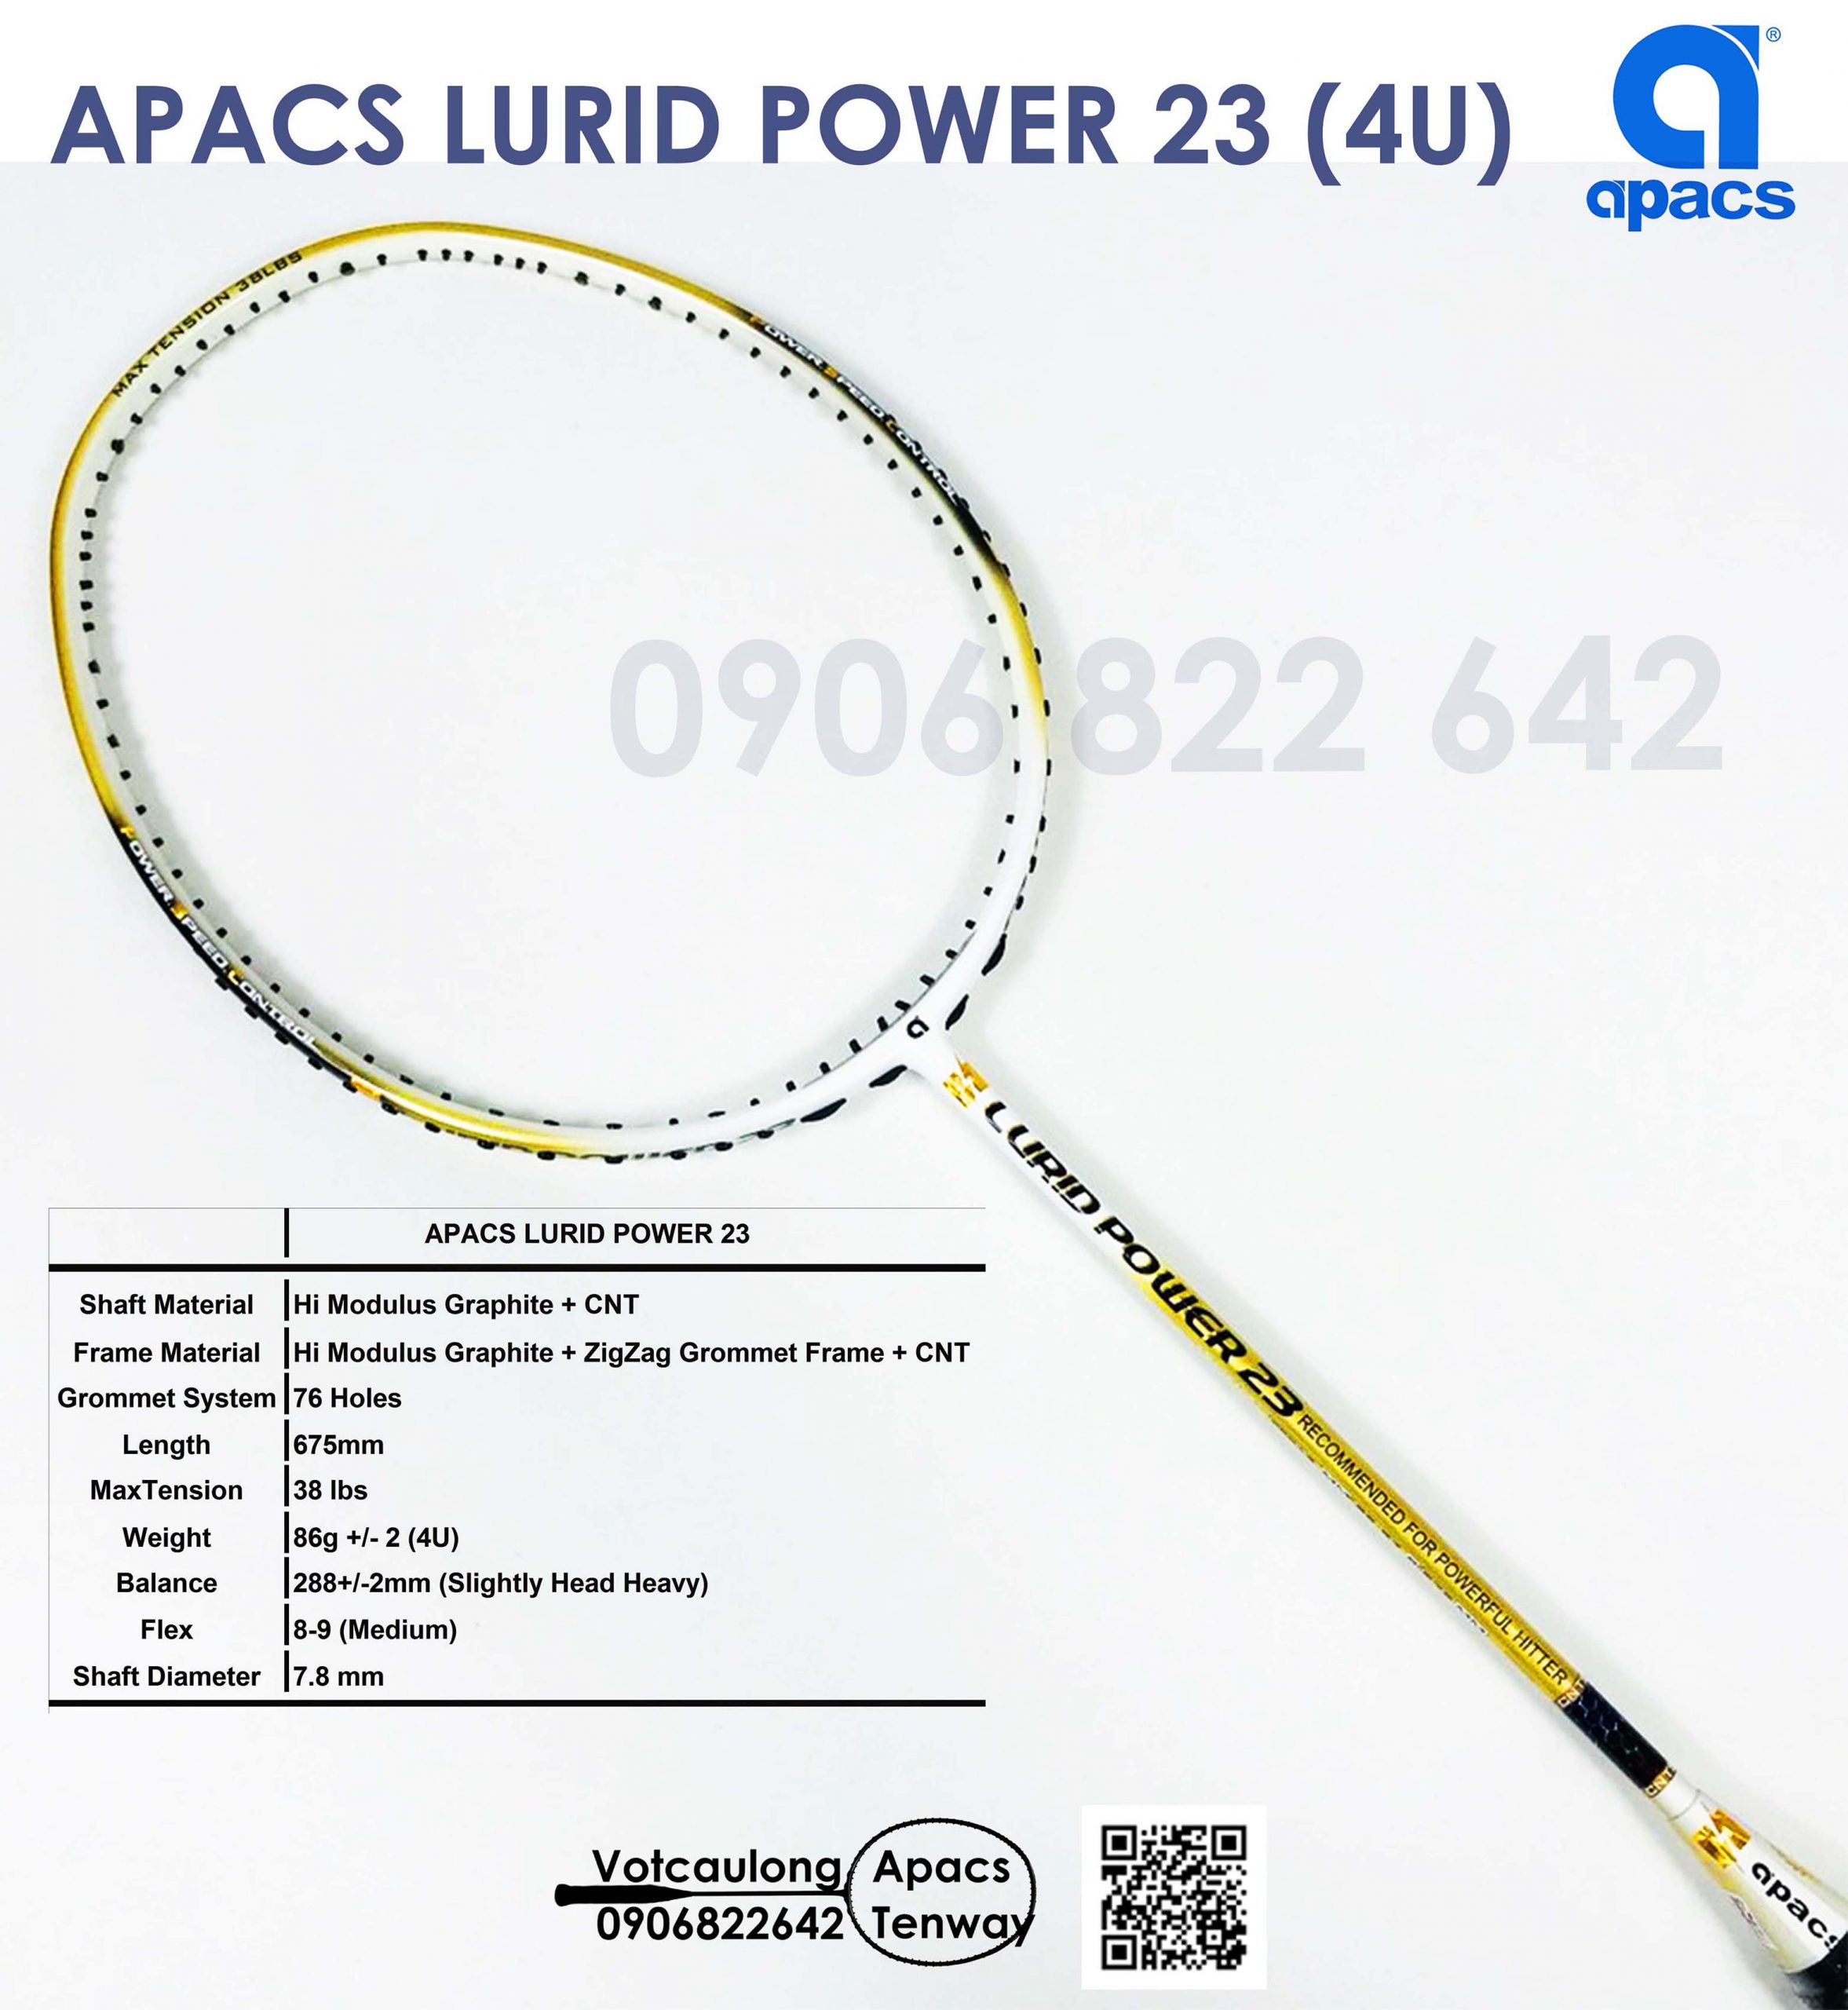 Nâng tầm trình độ chơi cầu lông của bạn với vợt cầu lông Apacs Lurid Power. Với thiết kế nhẹ nhàng và đầy phong cách, vợt này đem lại sự thoải mái và cảm giác chắc chắn khi sử dụng.